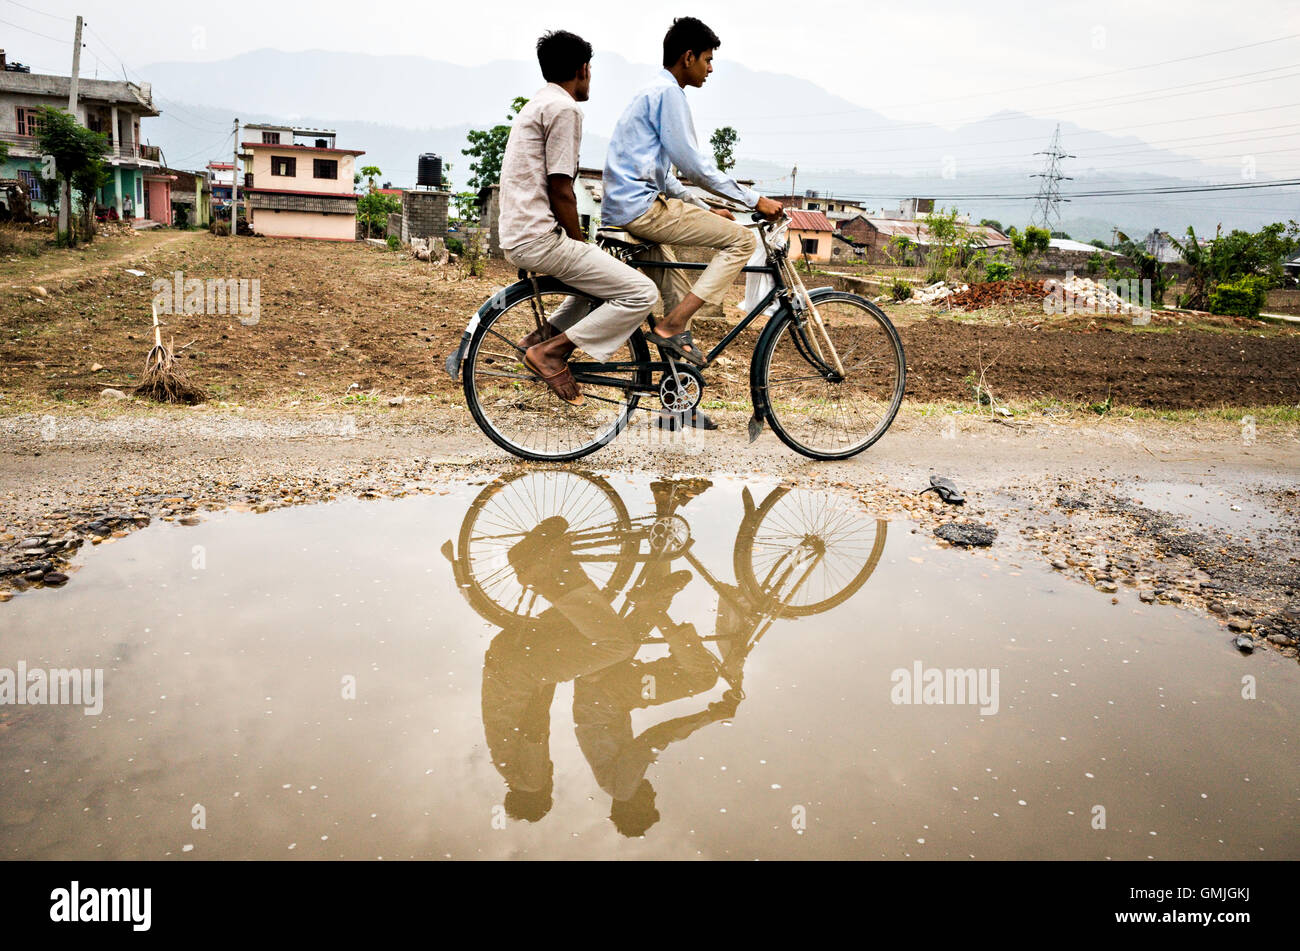 Due terai Nepalese uomo su una bicicletta che riflette su un fossato acqua, Hetauda, Nepal Foto Stock